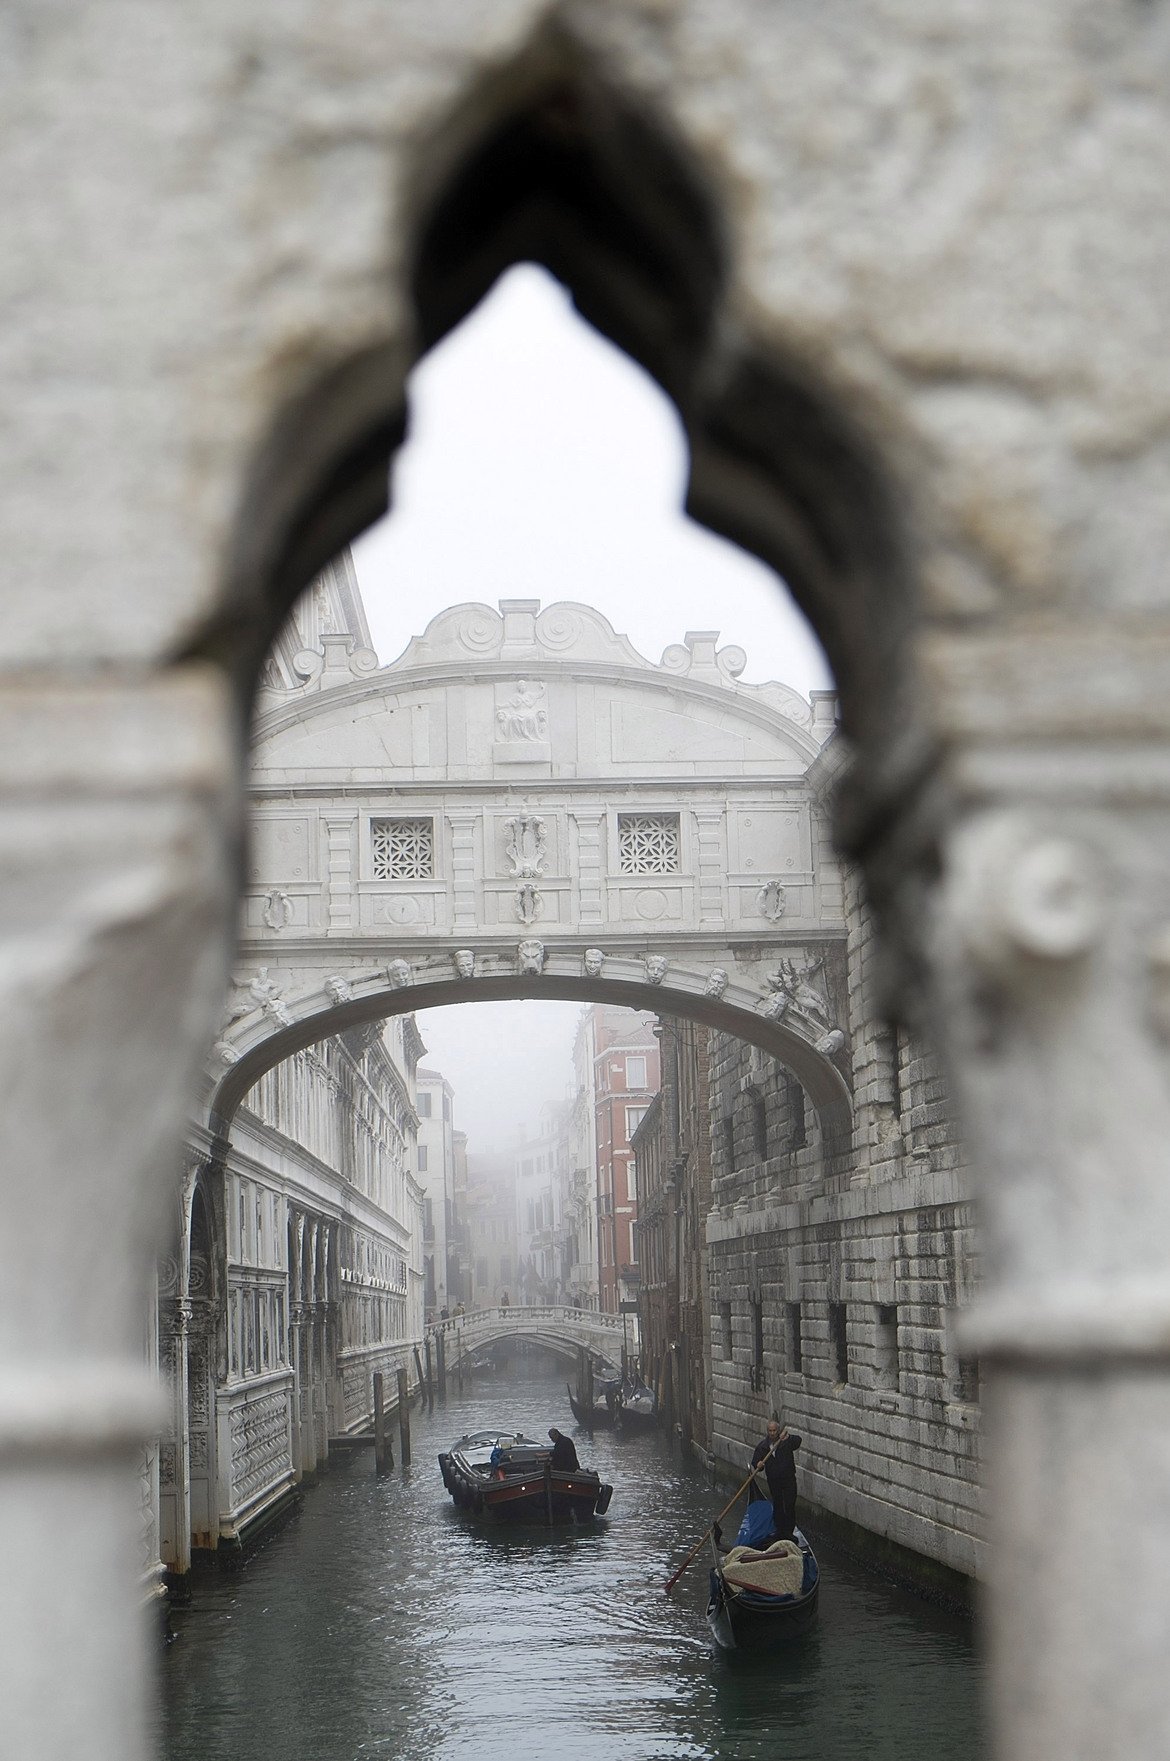  "Мостът на въздишките" 

Според мнозина Венеция е едно от най-романтичните места на света и затова не е чудно, че името "Мостът на въздишките" звучи като идеалната забележителност за влюбени гълъбчета. Съоръжението получава името си от Лорд Байрон и зад него далеч не се крие любовна история. 

Всъщност през този мост са превеждани затворниците, преди да бъдат заключени. Смятало се, че осъдените поглеждали към красивата Венеция за последен път и въздишали, че повече най-вероятно няма да видят тази прелест.